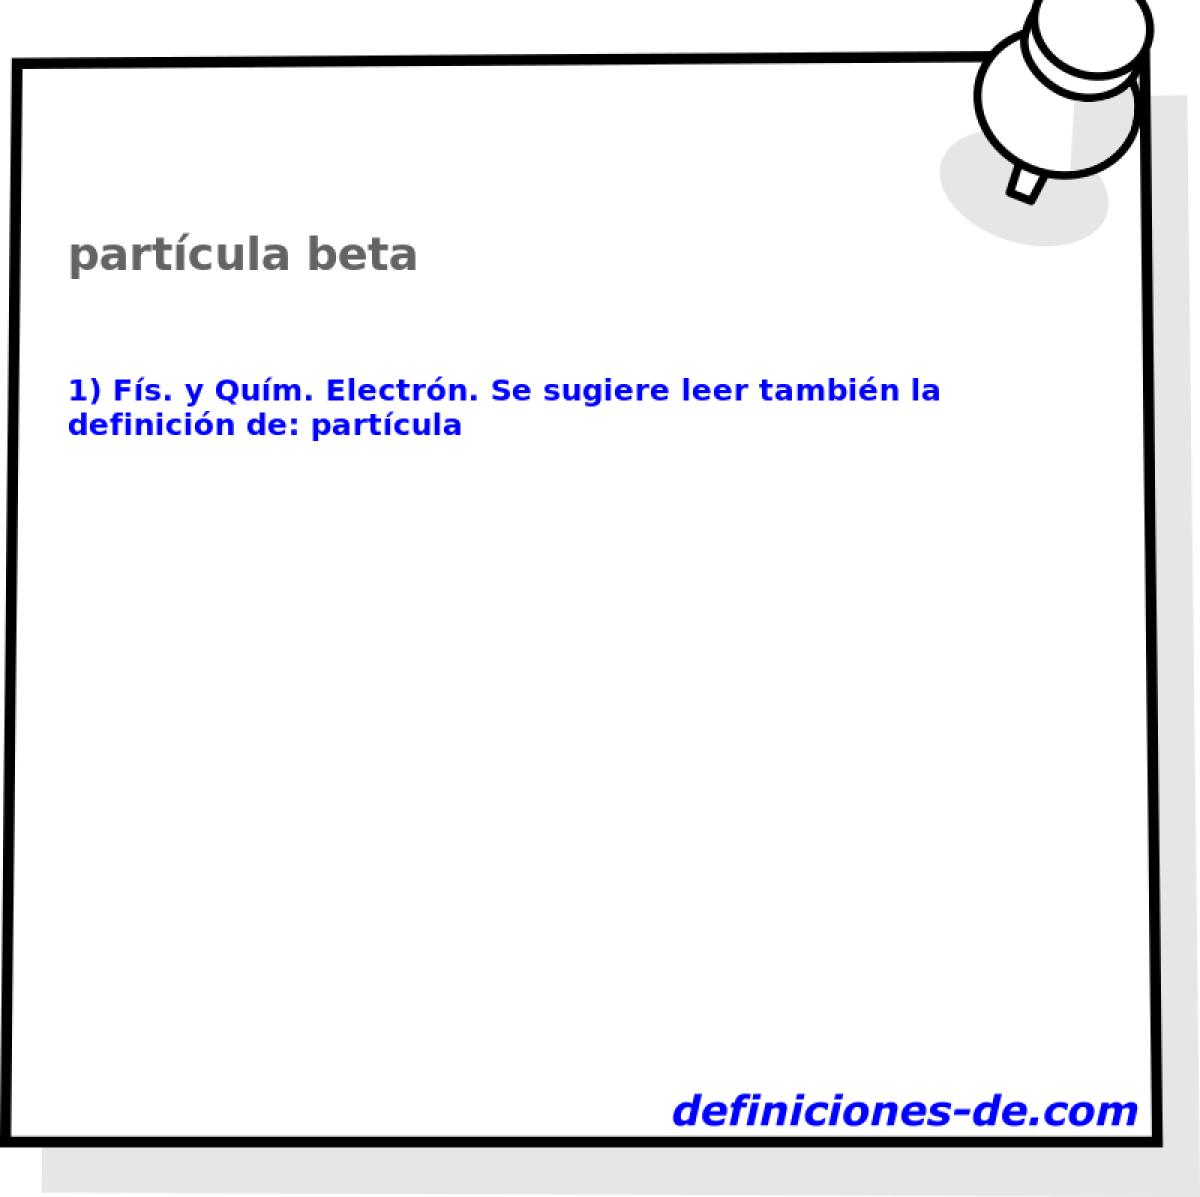 partcula beta 